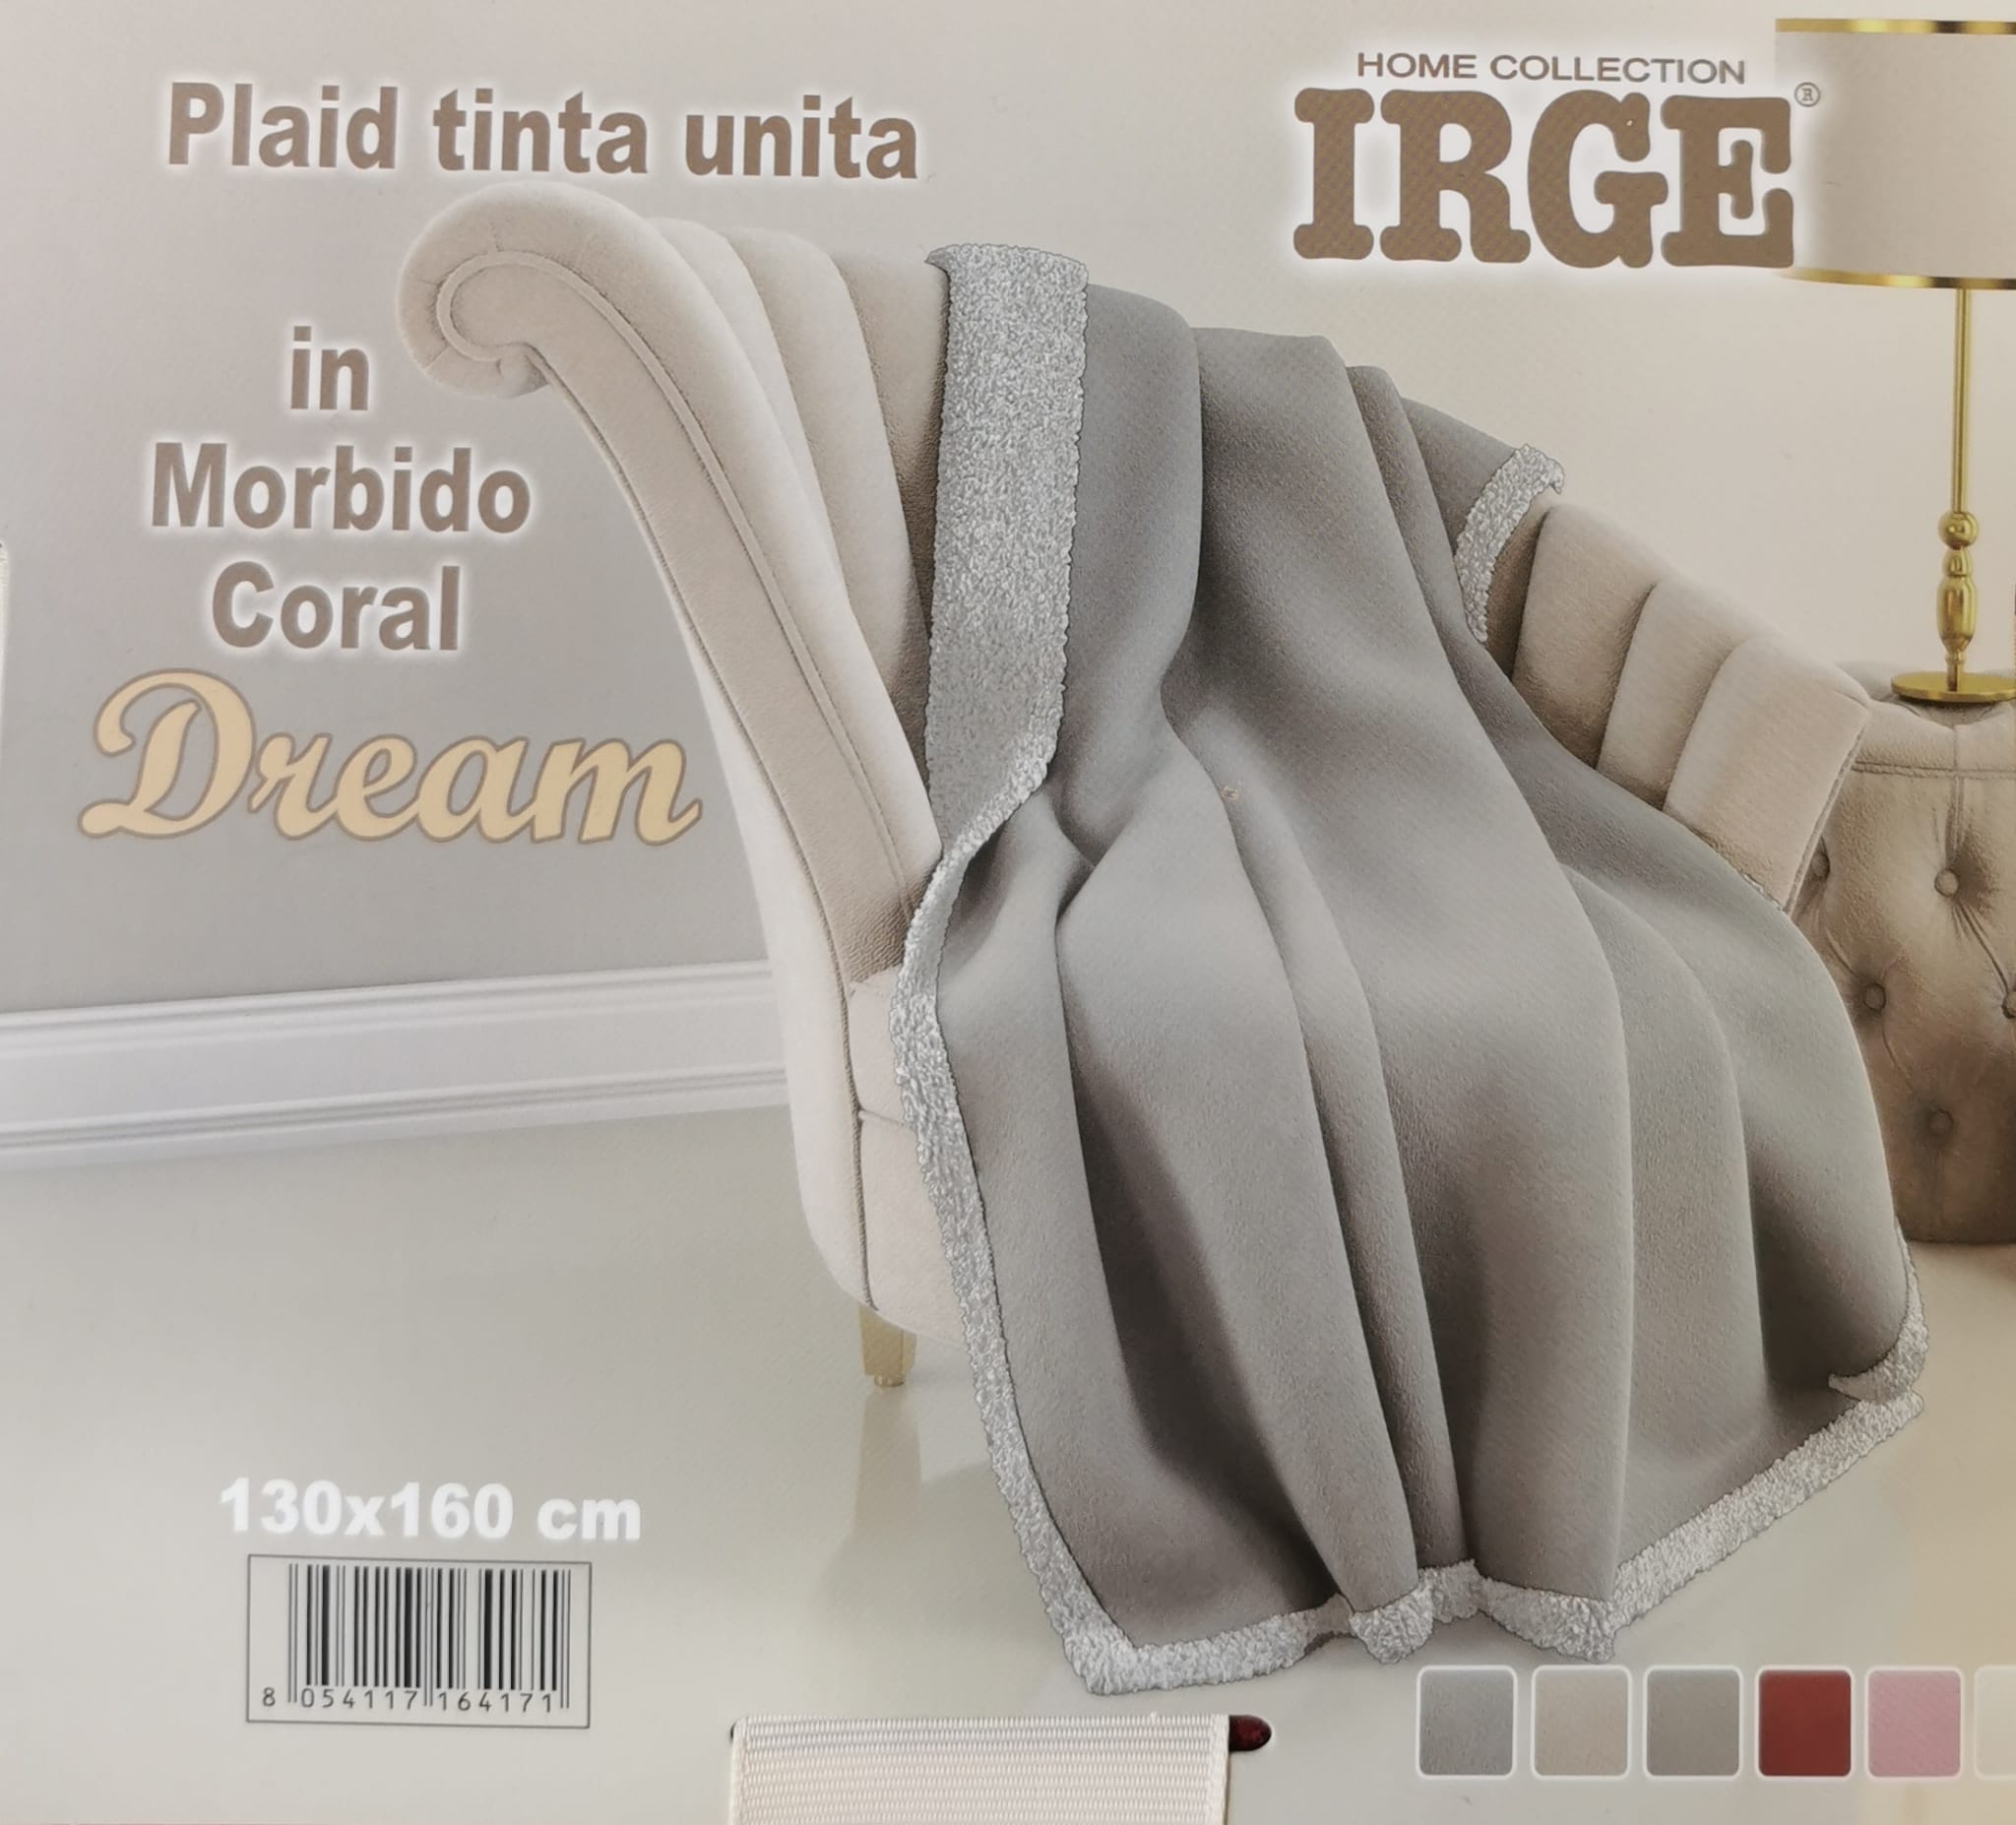 Maxi plaid / coperta Irge singolo in morbido coral modello dream